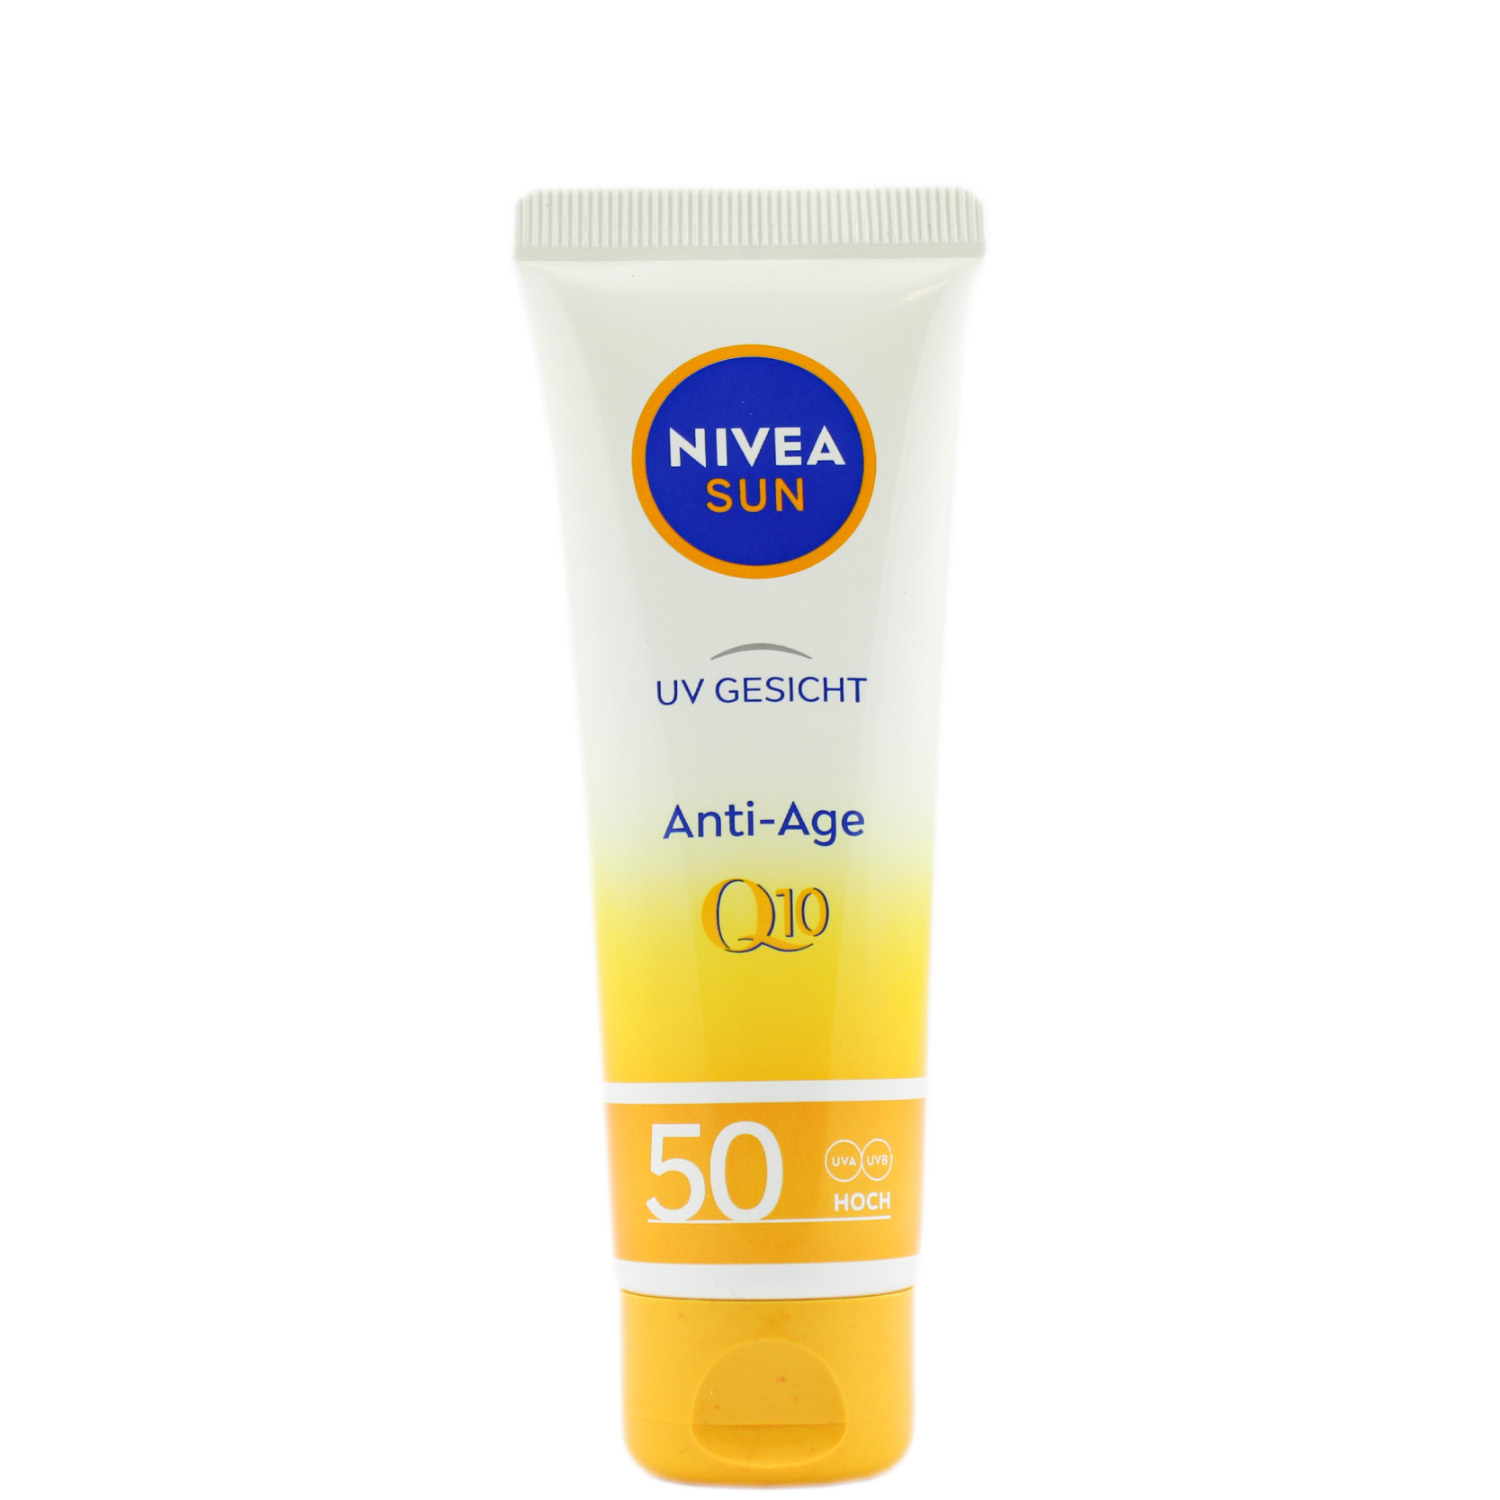 Nivea Sun UV Gesicht Anti-Age Sonnenschutz Q10 mit LSF50 50ml